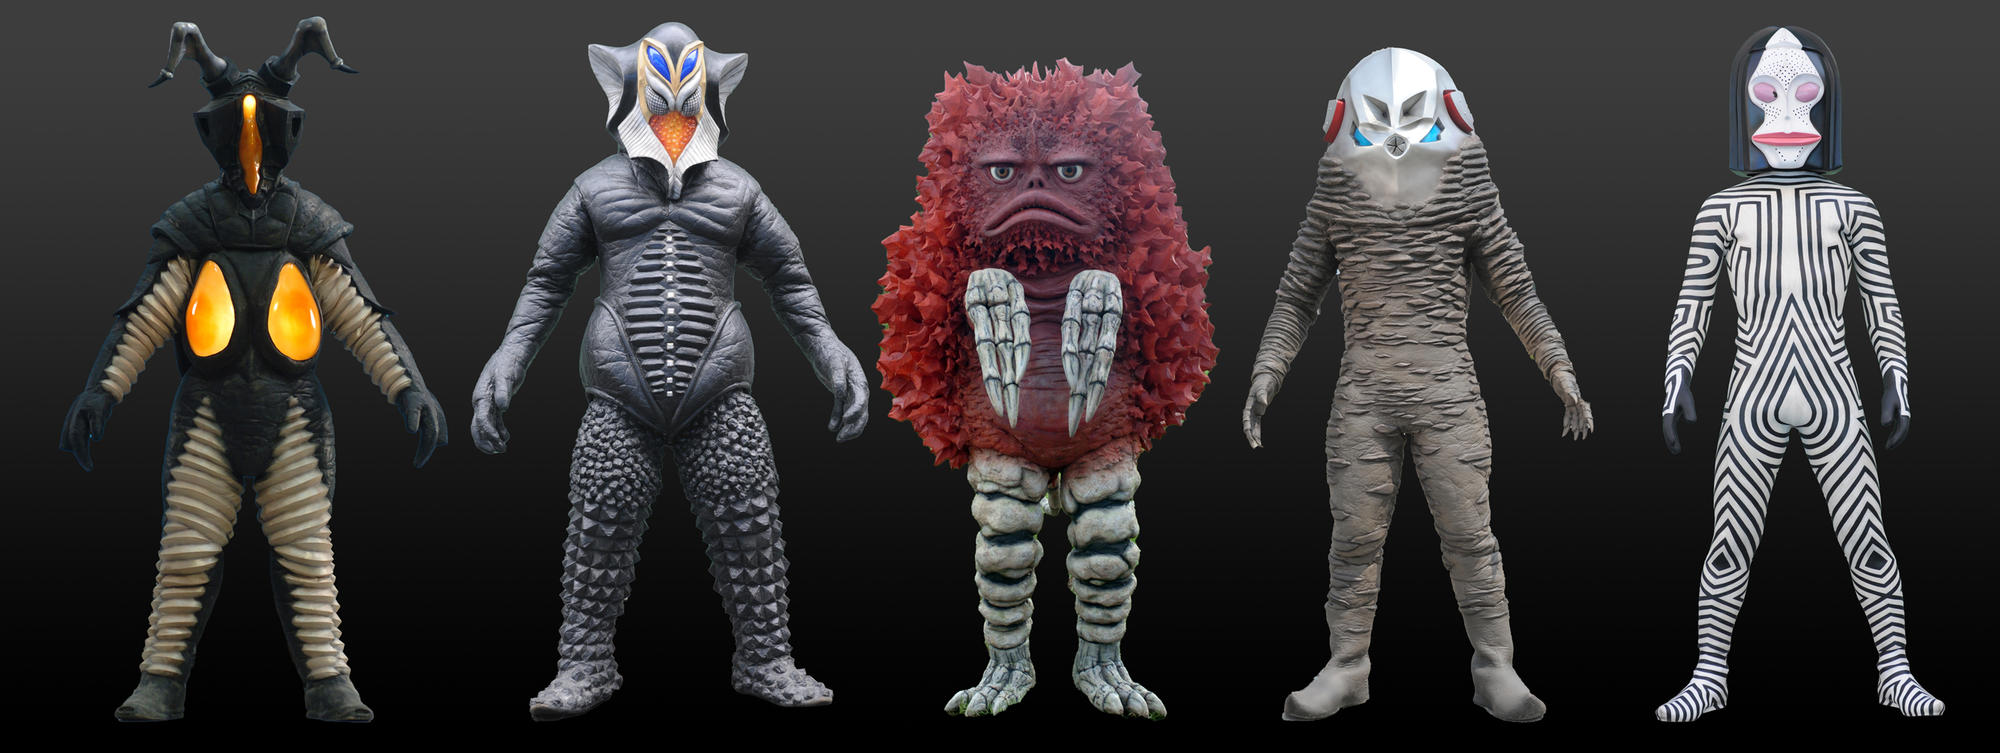 5款主题作品的怪兽原型，从左起为：“芝顿”、“美弗拉斯星人”、“比格蒙”、“扎拉布星人”、“达达”